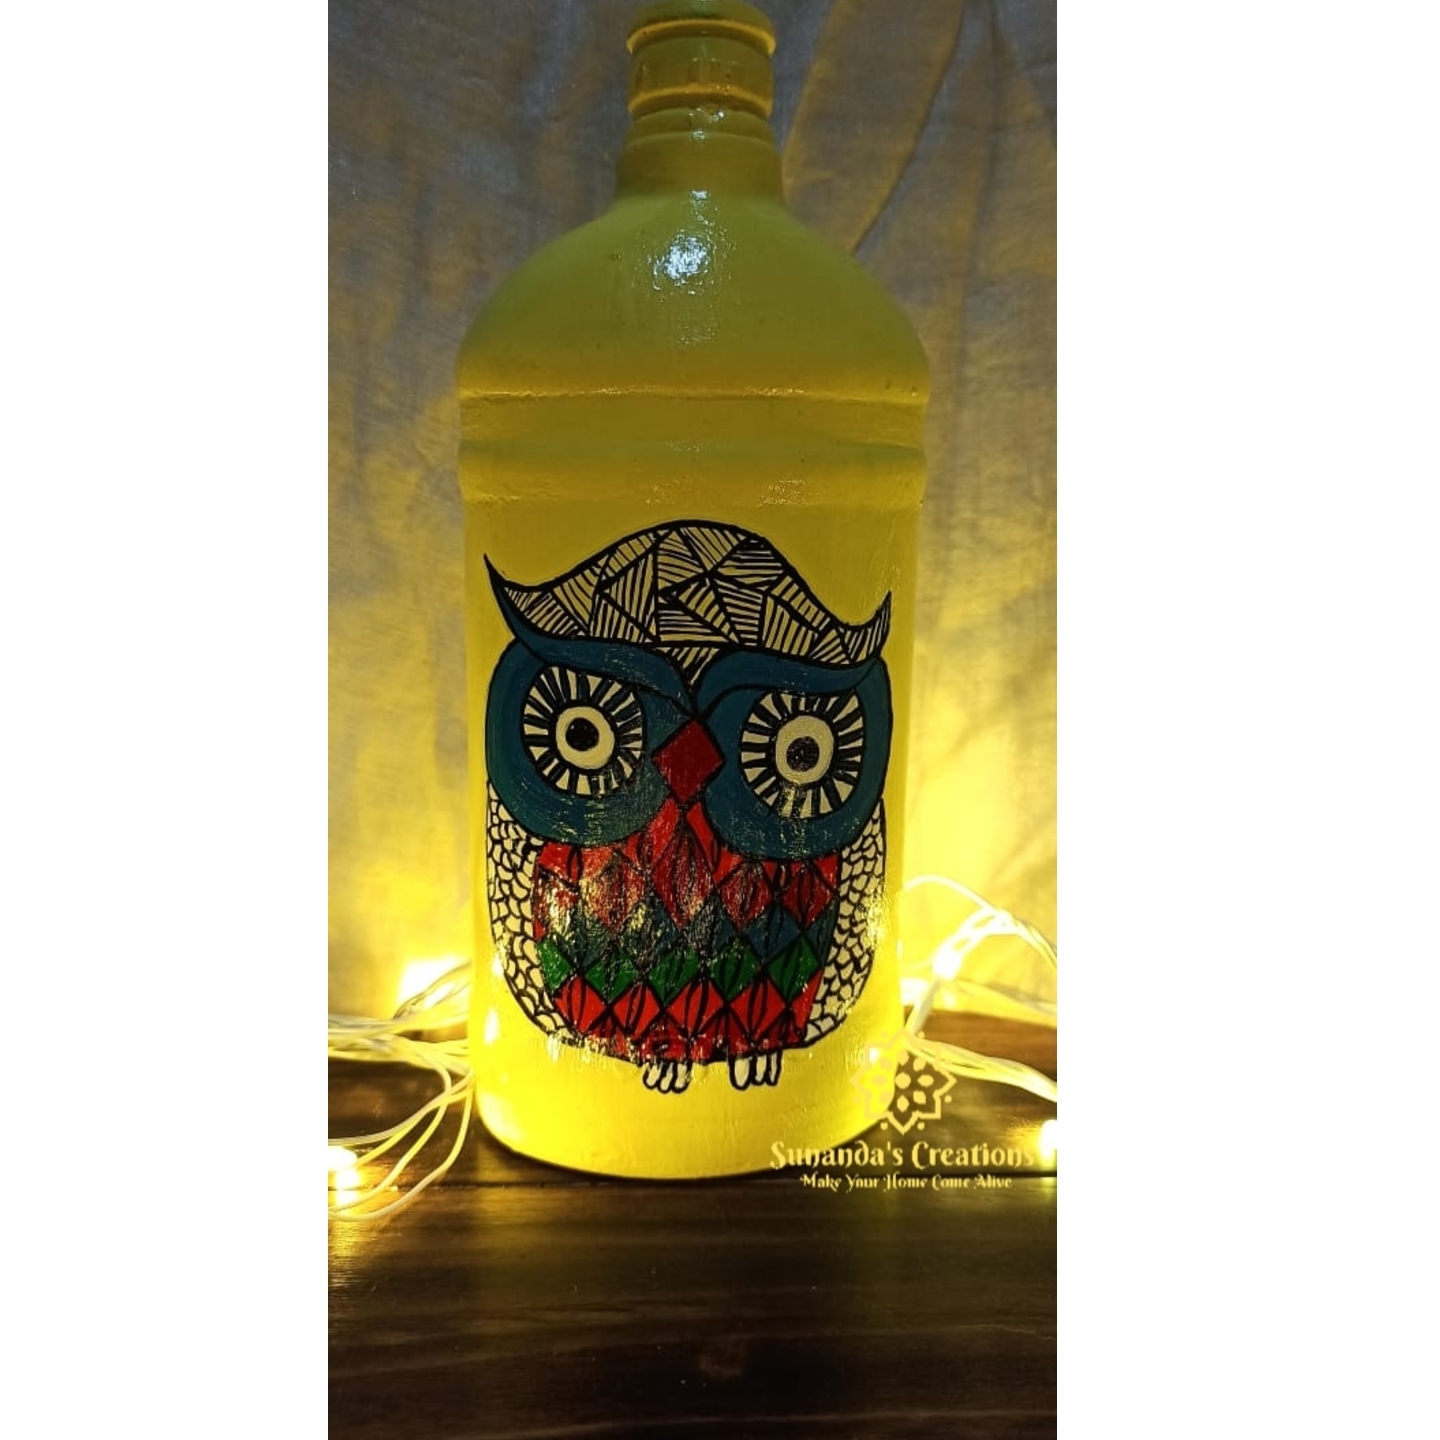 Handpainted Owl design bottle art